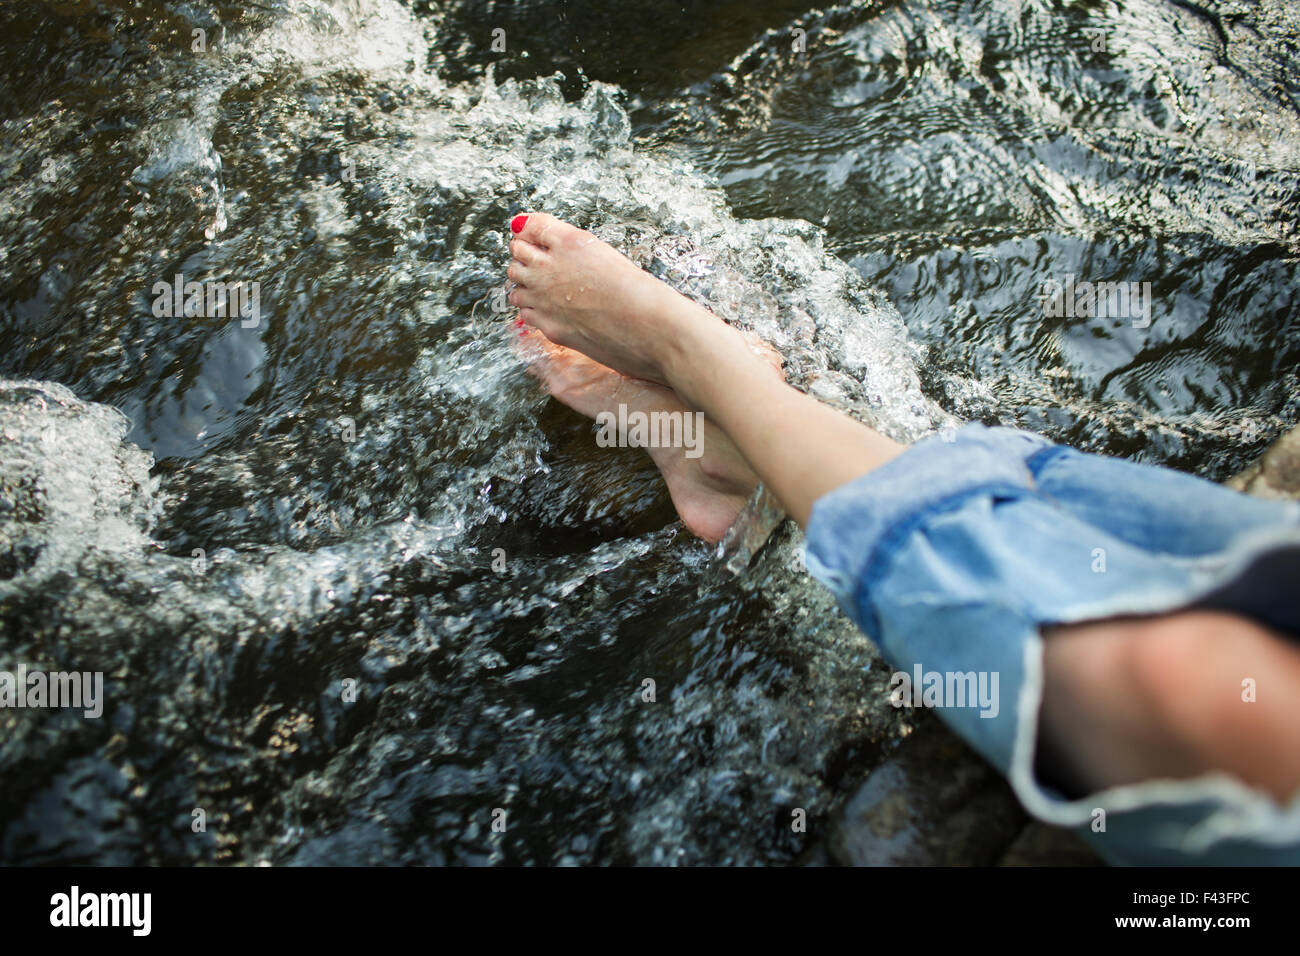 Una mujer en jeans de moda con un rip, con sus pies en las frías aguas de un río que fluye. Foto de stock